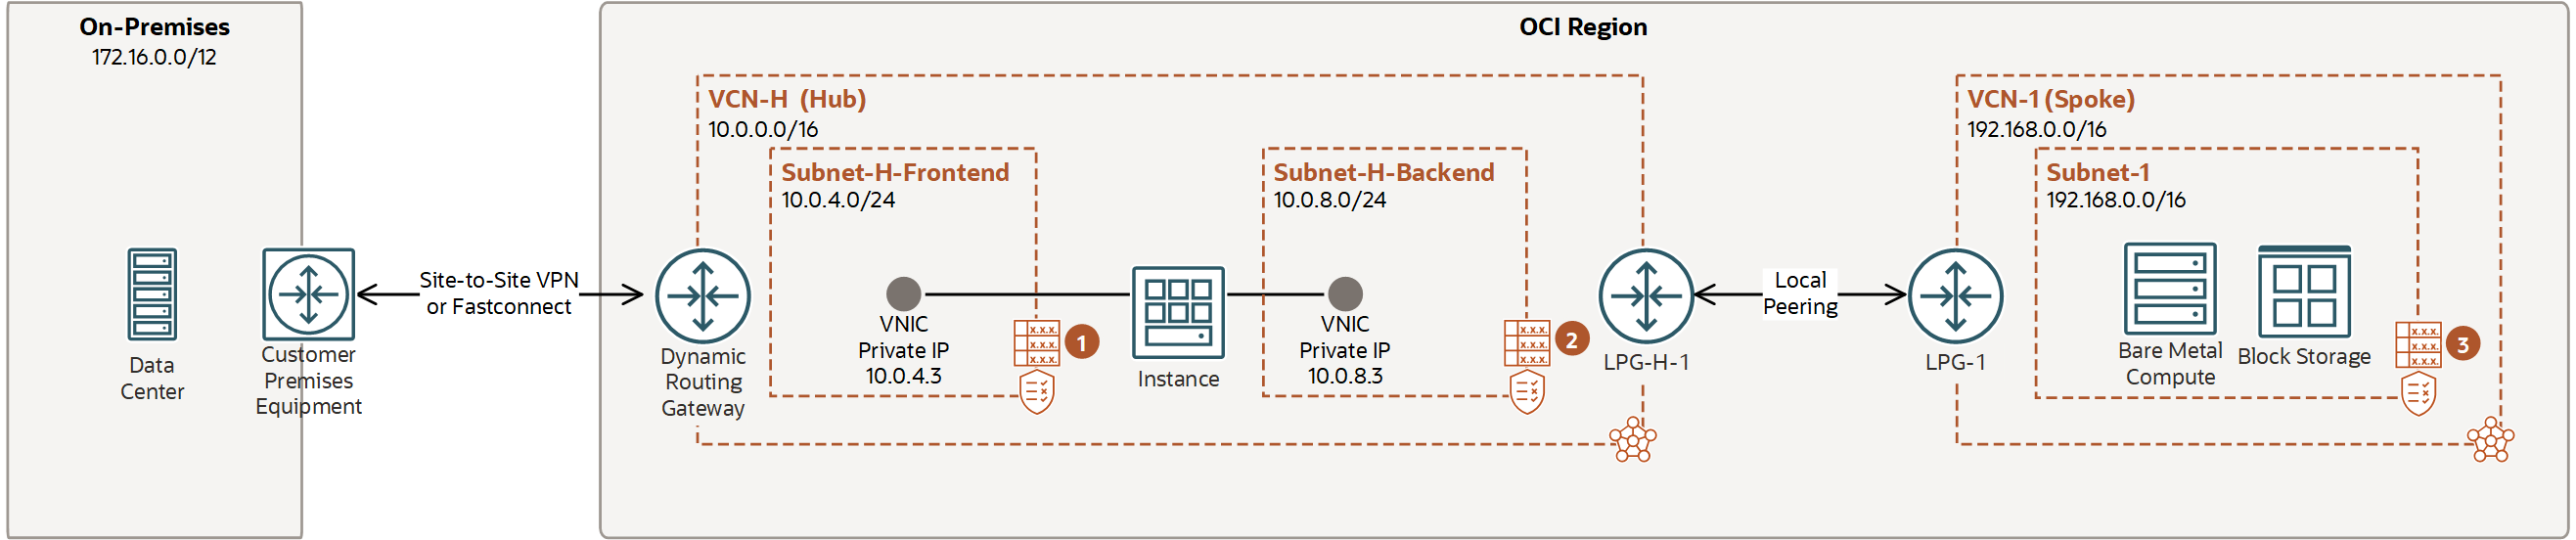 Esta imagen muestra la tarea 6: configurar la instancia en la VCN de hub.